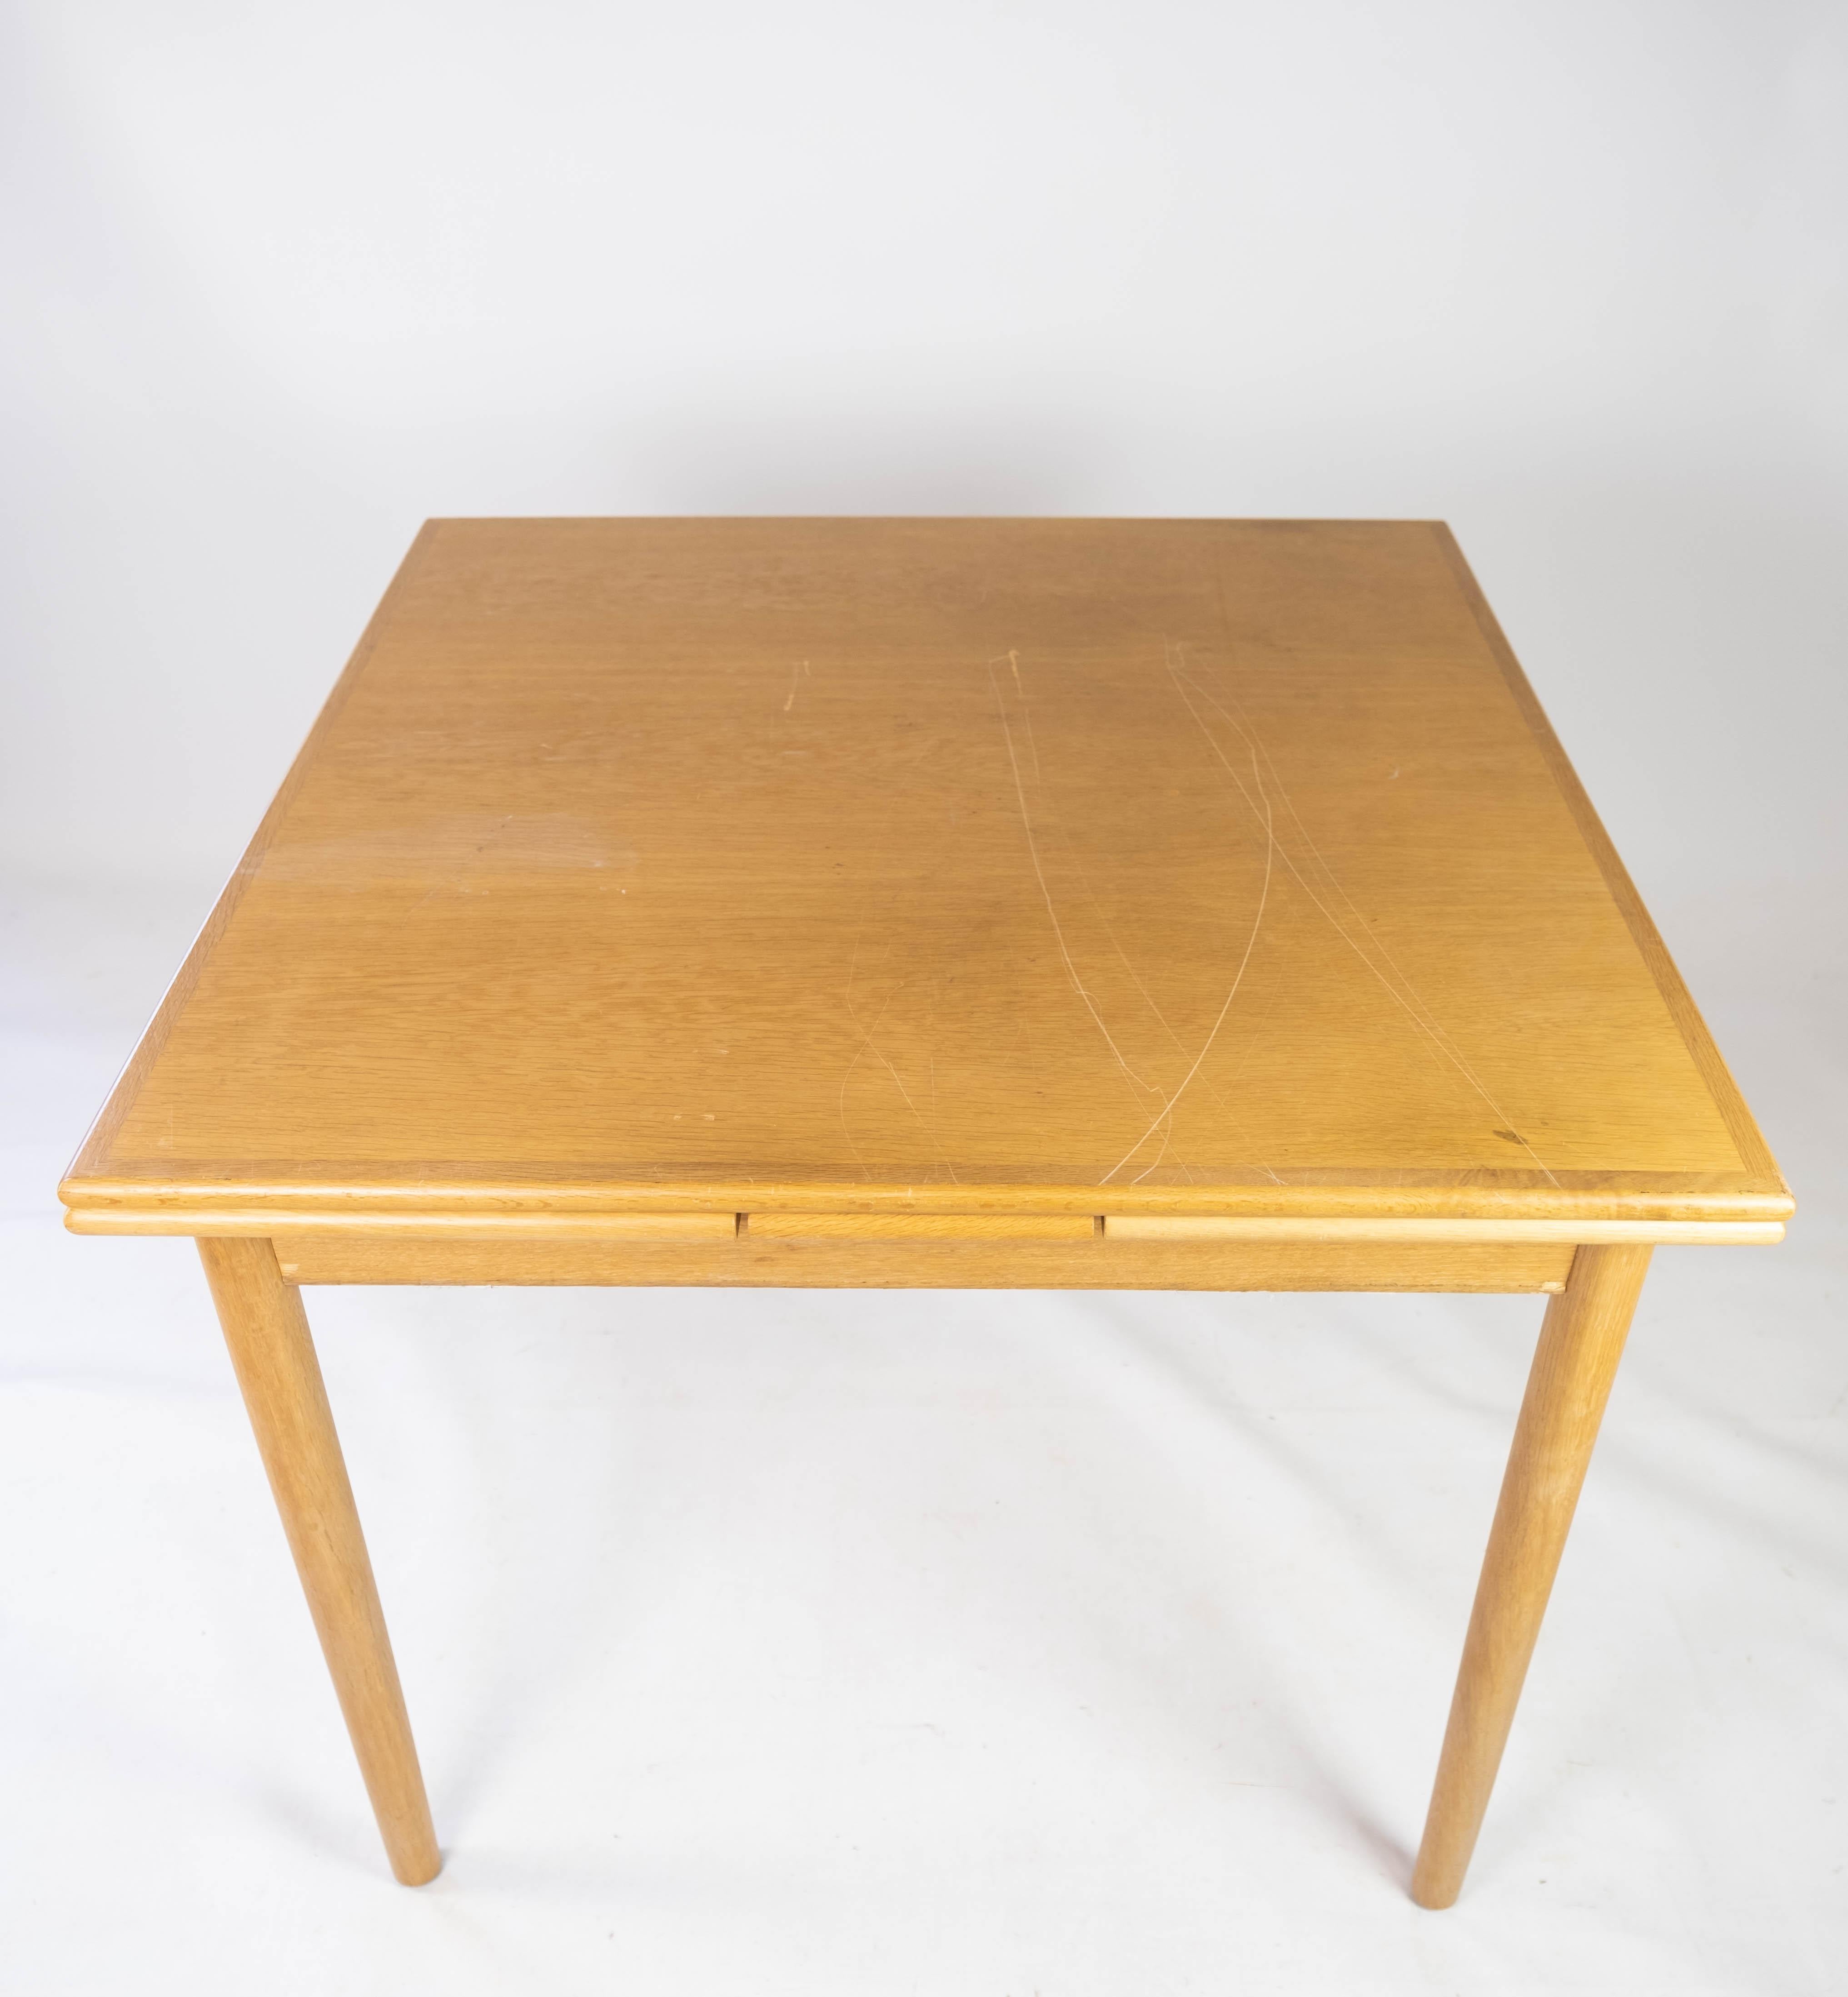 Cette table de salle à manger de conception danoise datant des années 1960 respire le charme et la fonctionnalité du milieu du siècle. Fabriqué en chêne, un bois durable et polyvalent, il incarne l'attrait intemporel du design scandinave.

La table